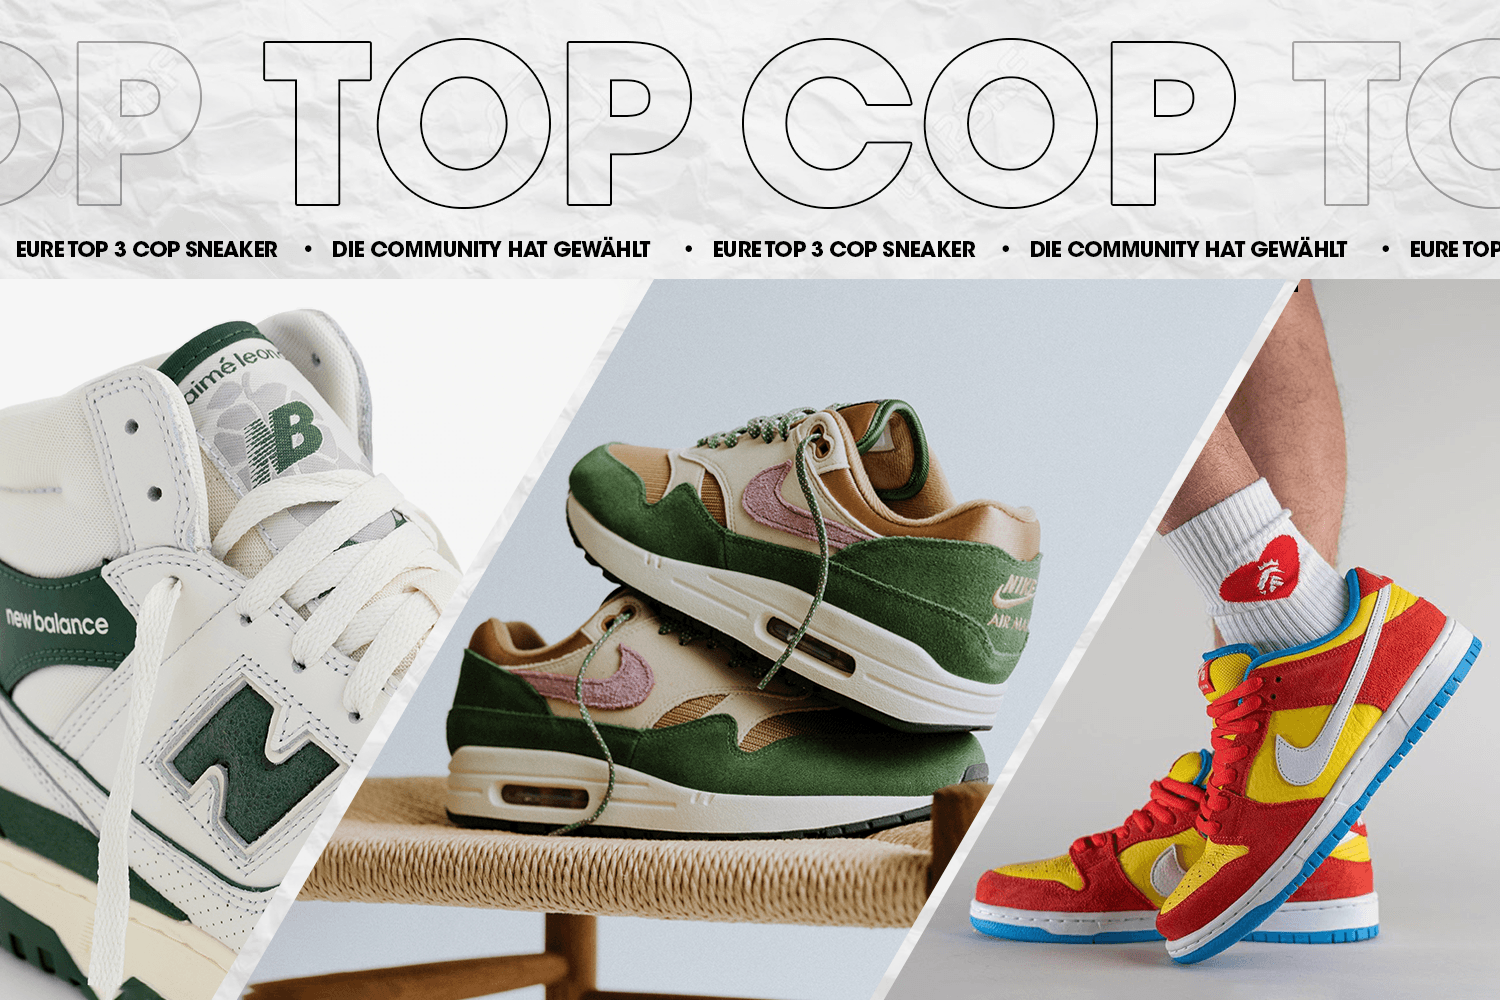 Die Community hat gewählt: Eure Top 3 Cop Sneaker Woche 18